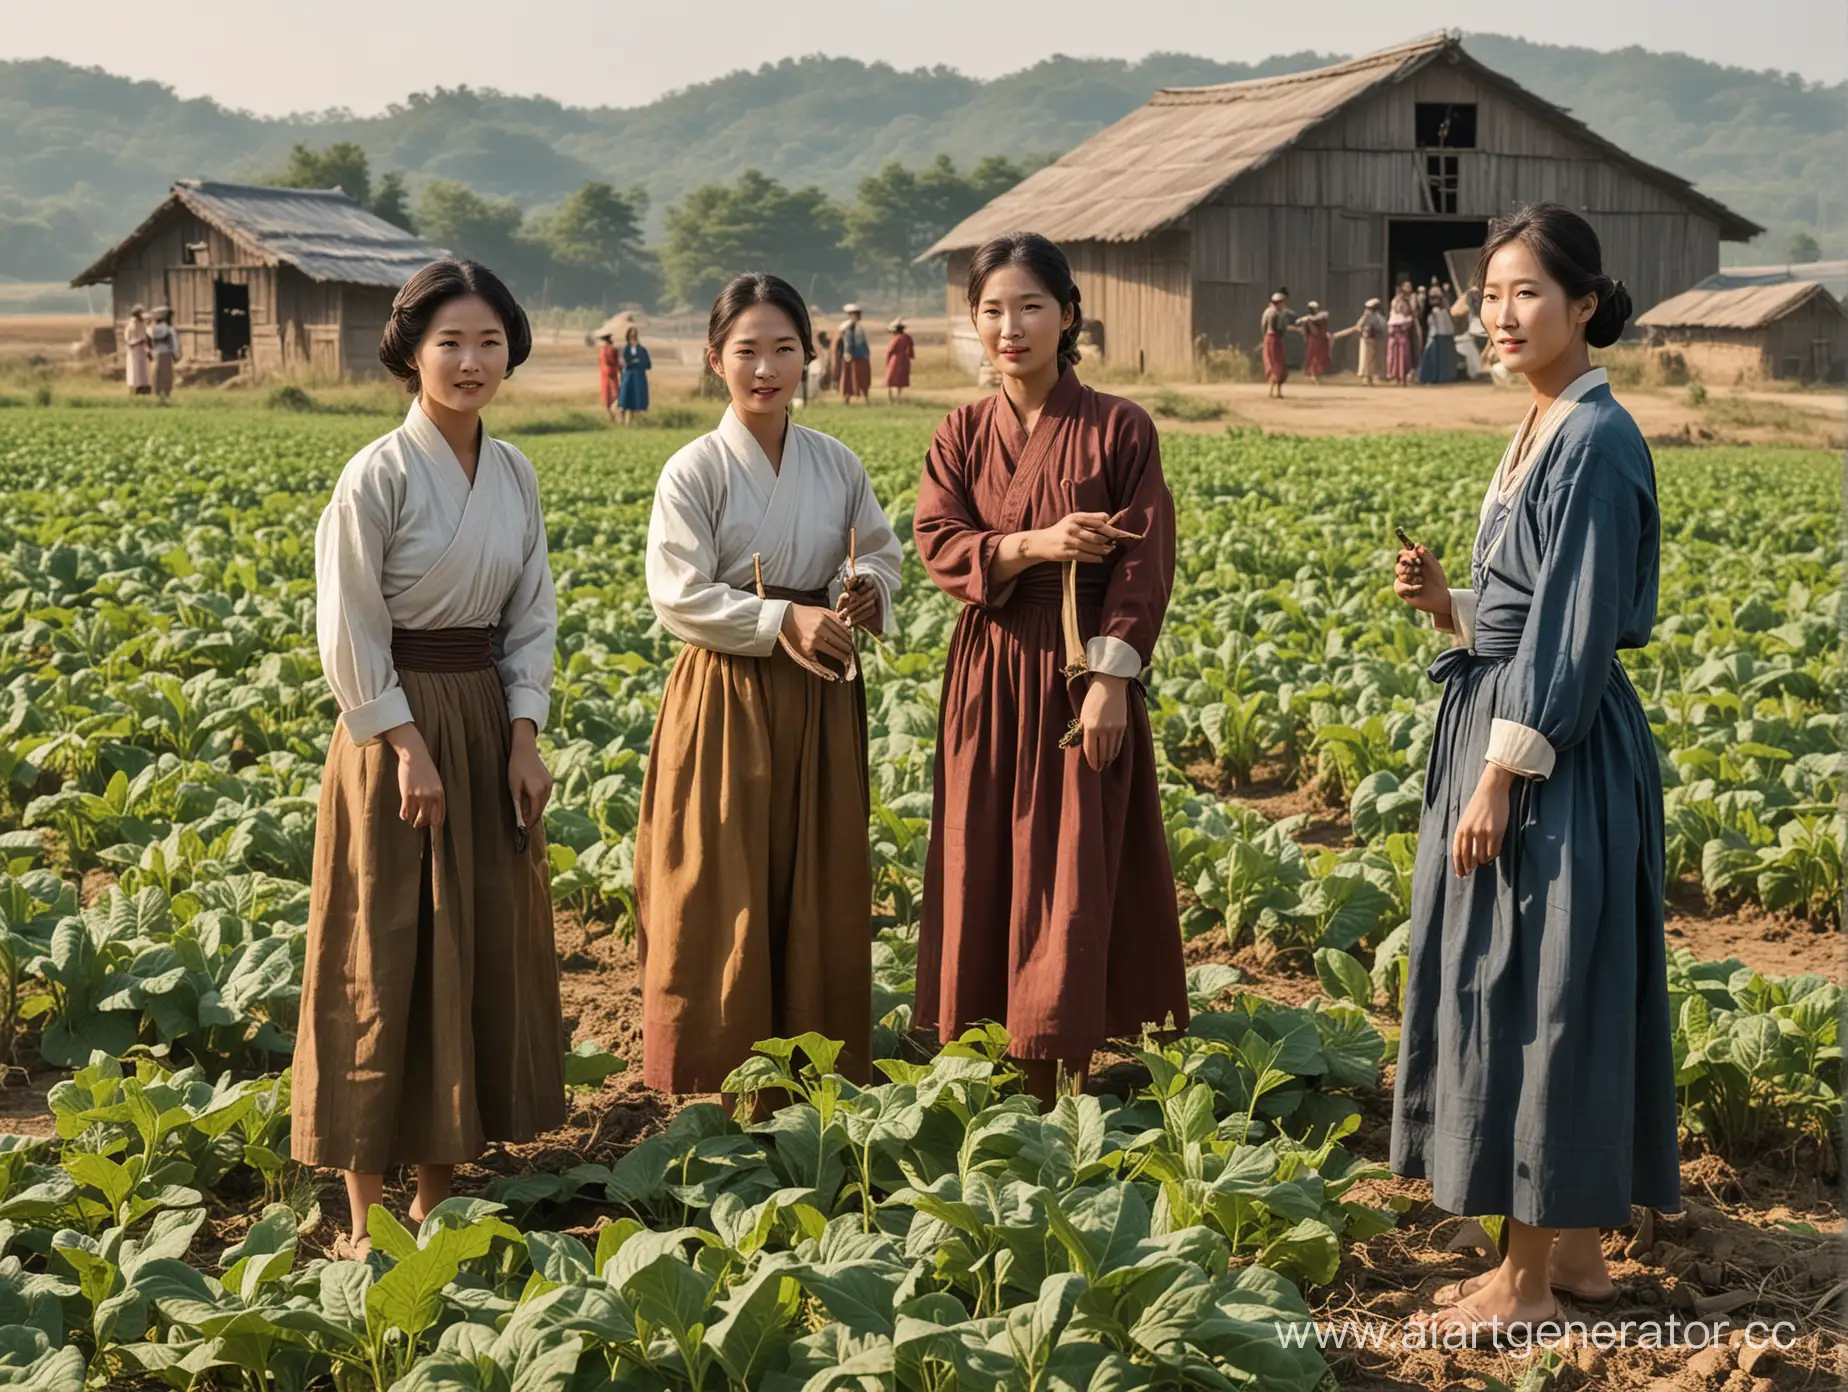 полуодетые кореянки в национальных костюмах крестьянок собирает табак в поле. позади амбар с табаком